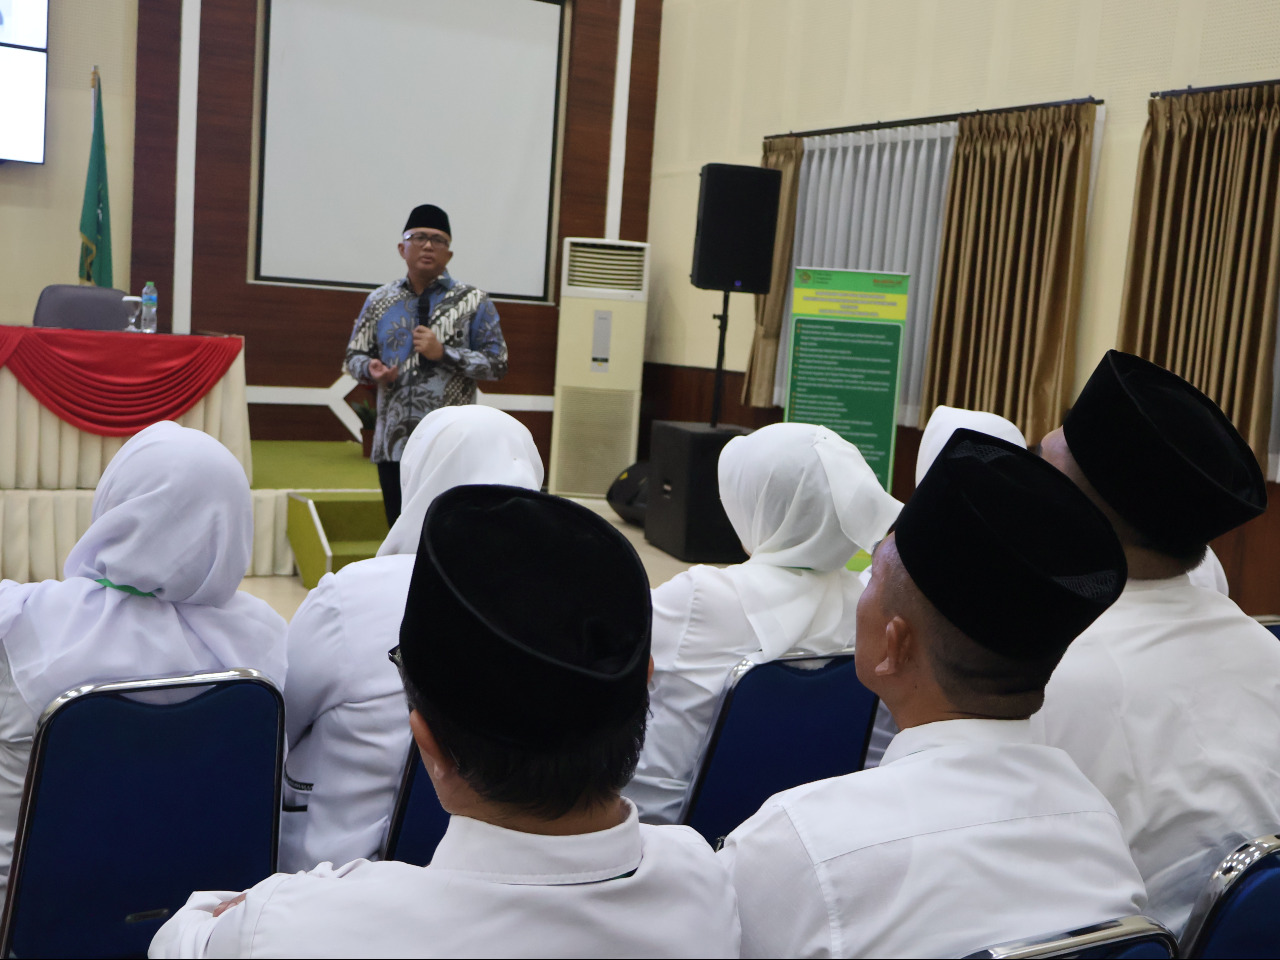 Bentuk Role Model ASN, BDK Bandung Latih Sejumlah Kepala Madrasah dan KUA

